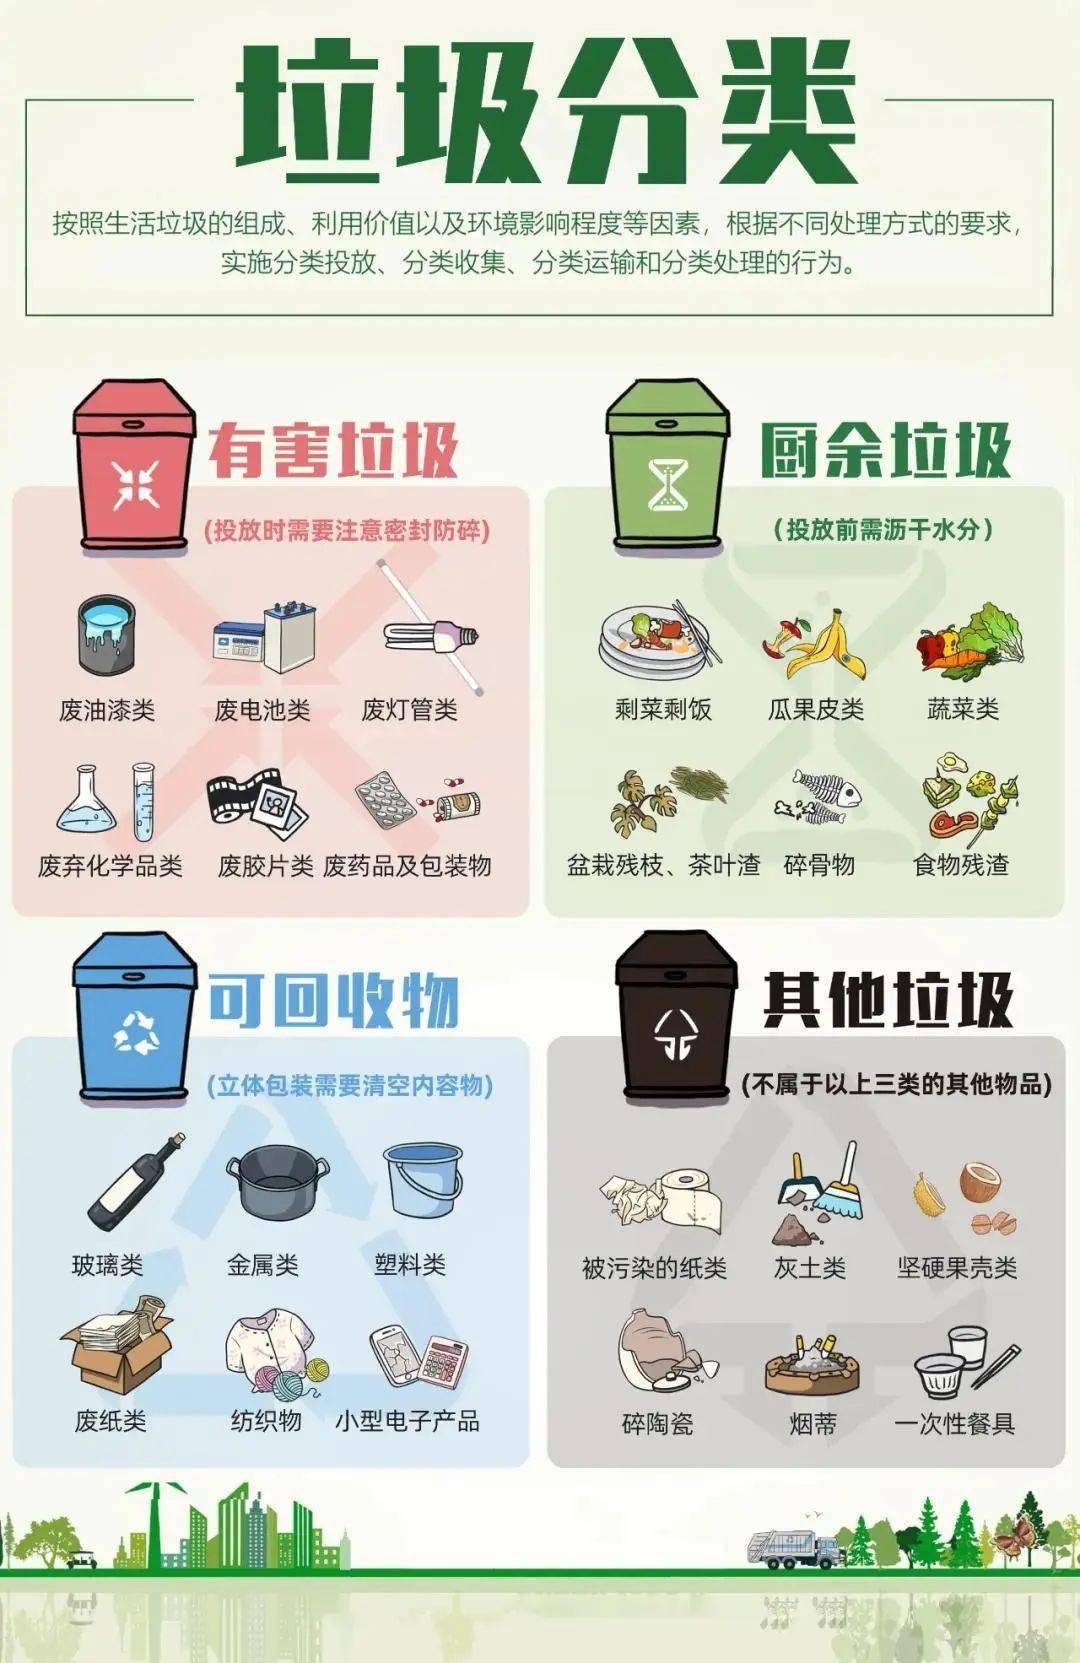 北京垃圾分类四种图片